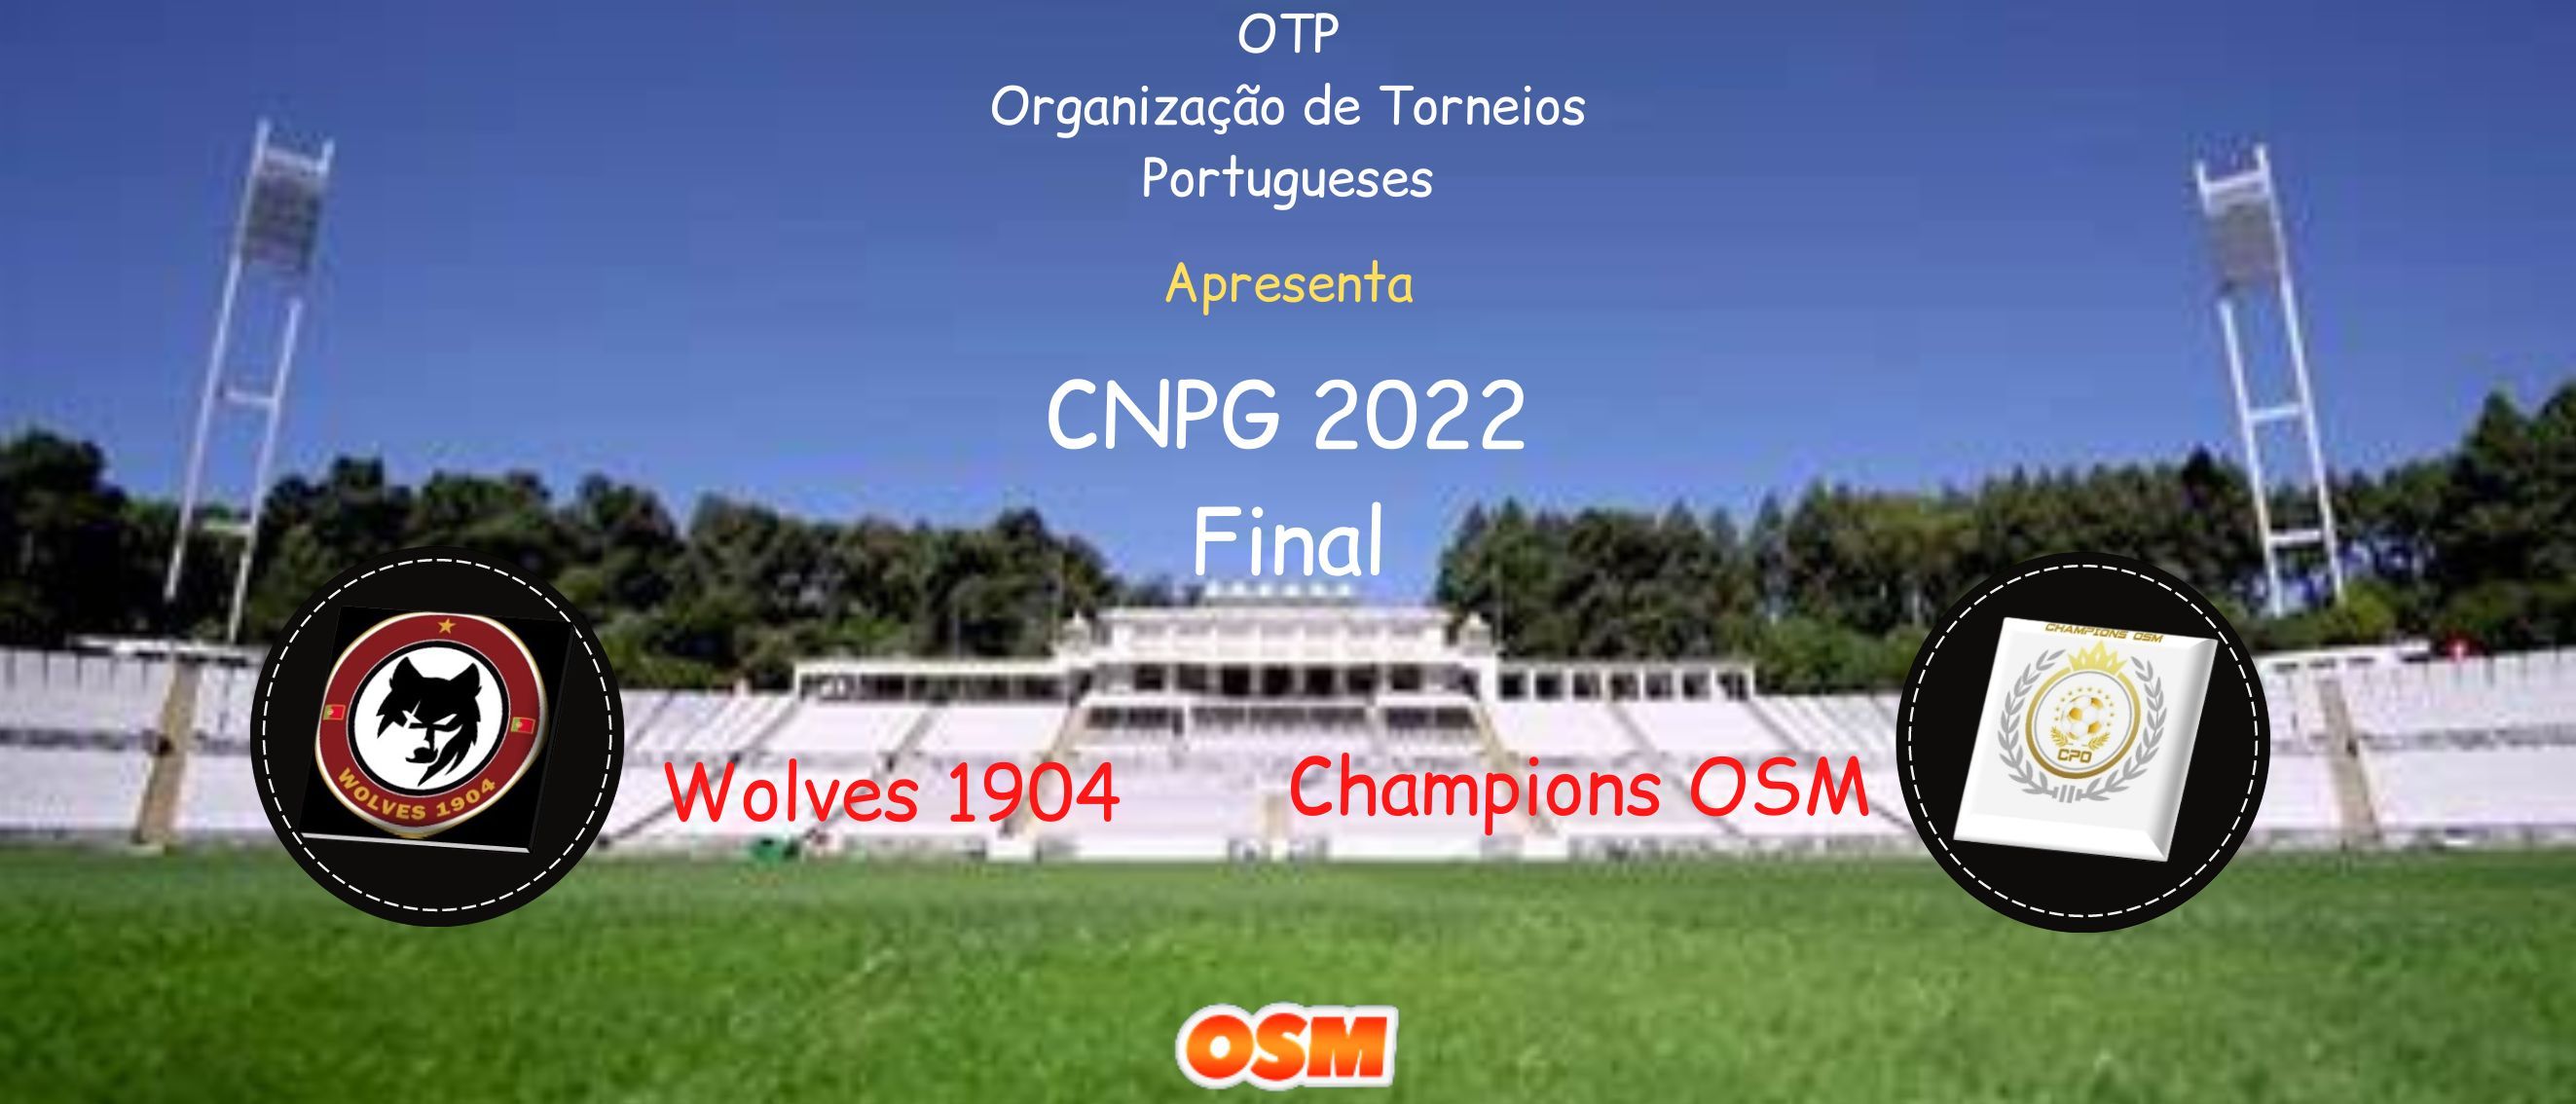 OTP Organização de Torneios Portugueses CNPG FINAL.jpg